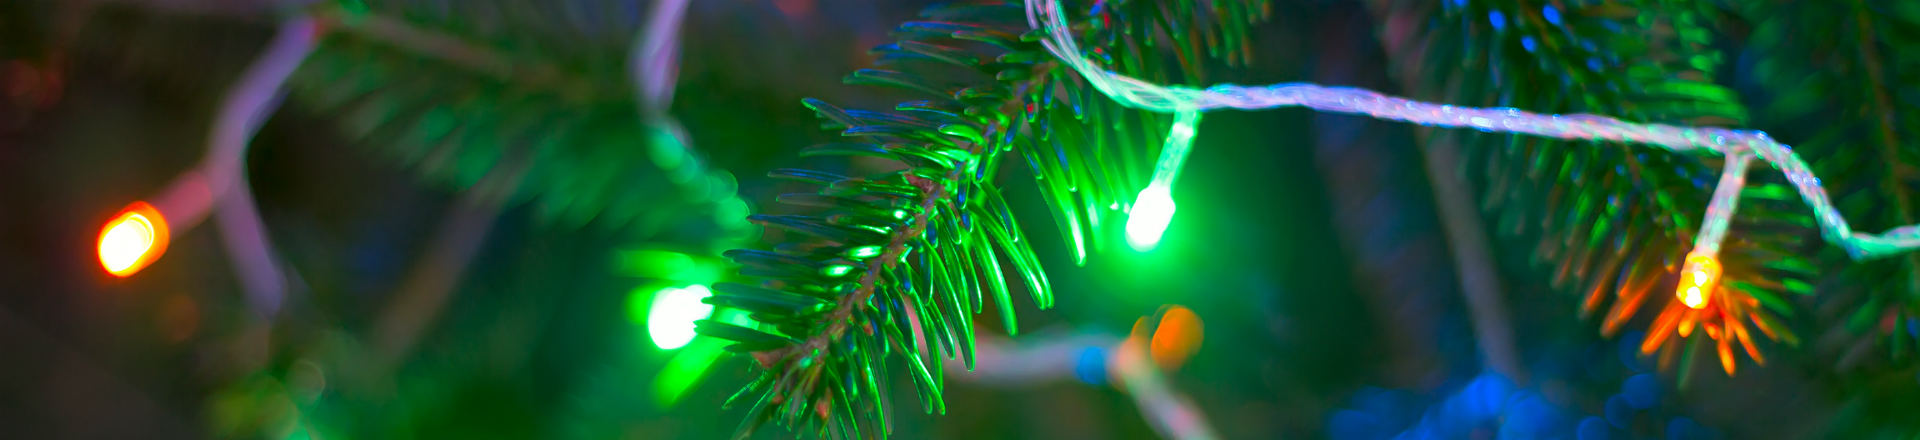 Christmas lighting image